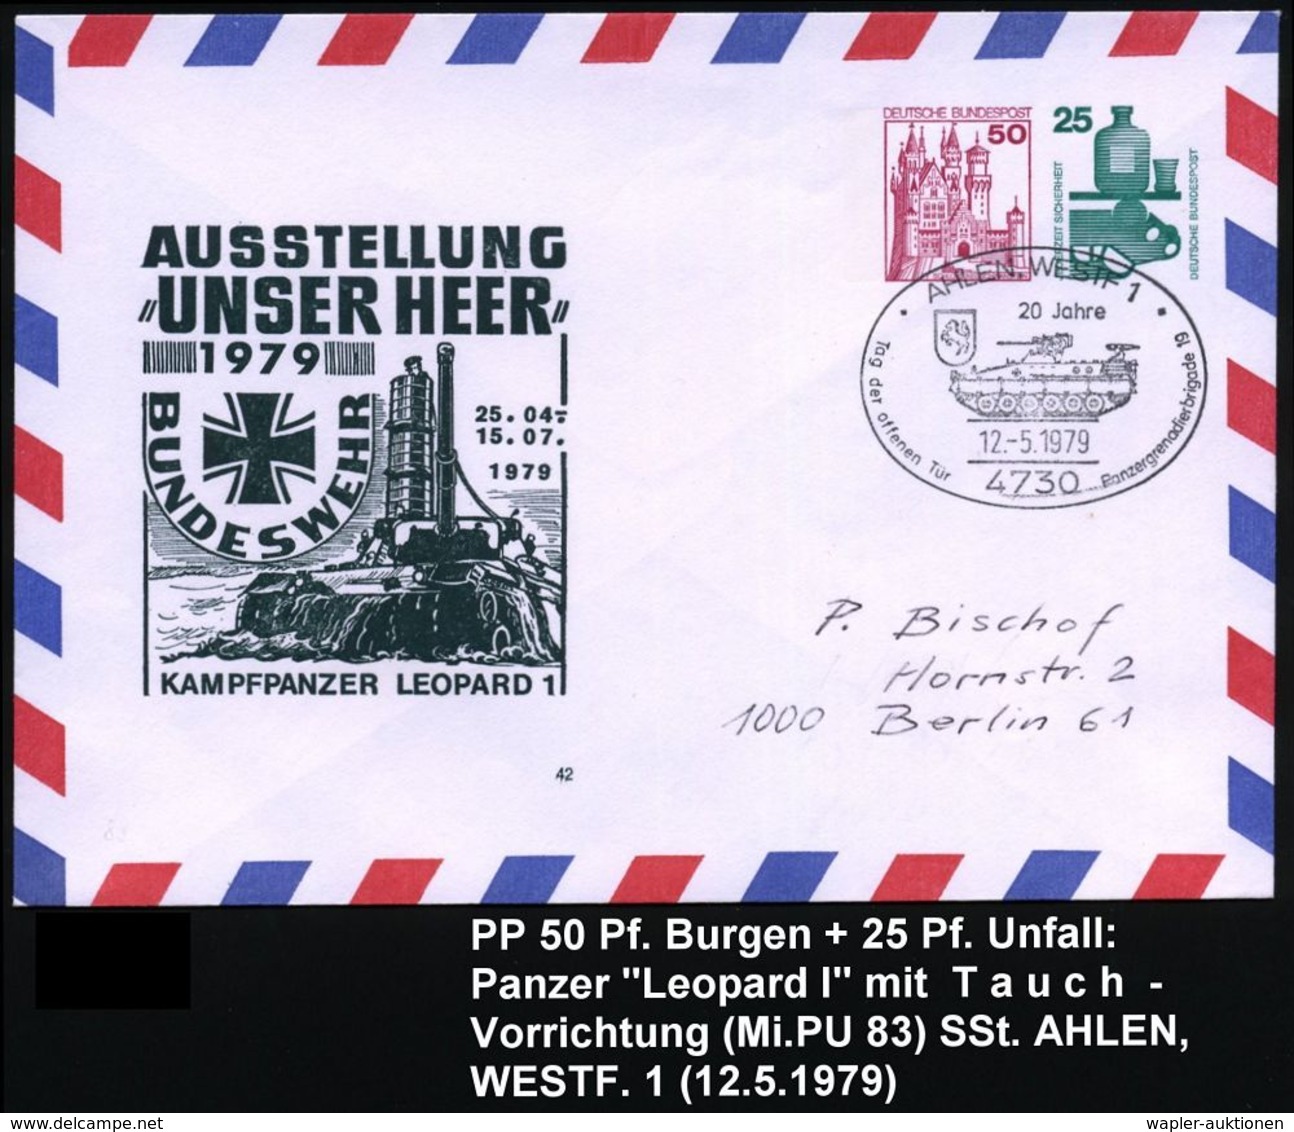 GEPANZERTE KRAFTFAHRZEUGE / PANZER : 4730 AALEN,WESTF 1/ 20 Jahre/ ..Panzergrenadierbrigade 19 1979 (12.5.) SSt = Sch.-P - Sonstige (Land)